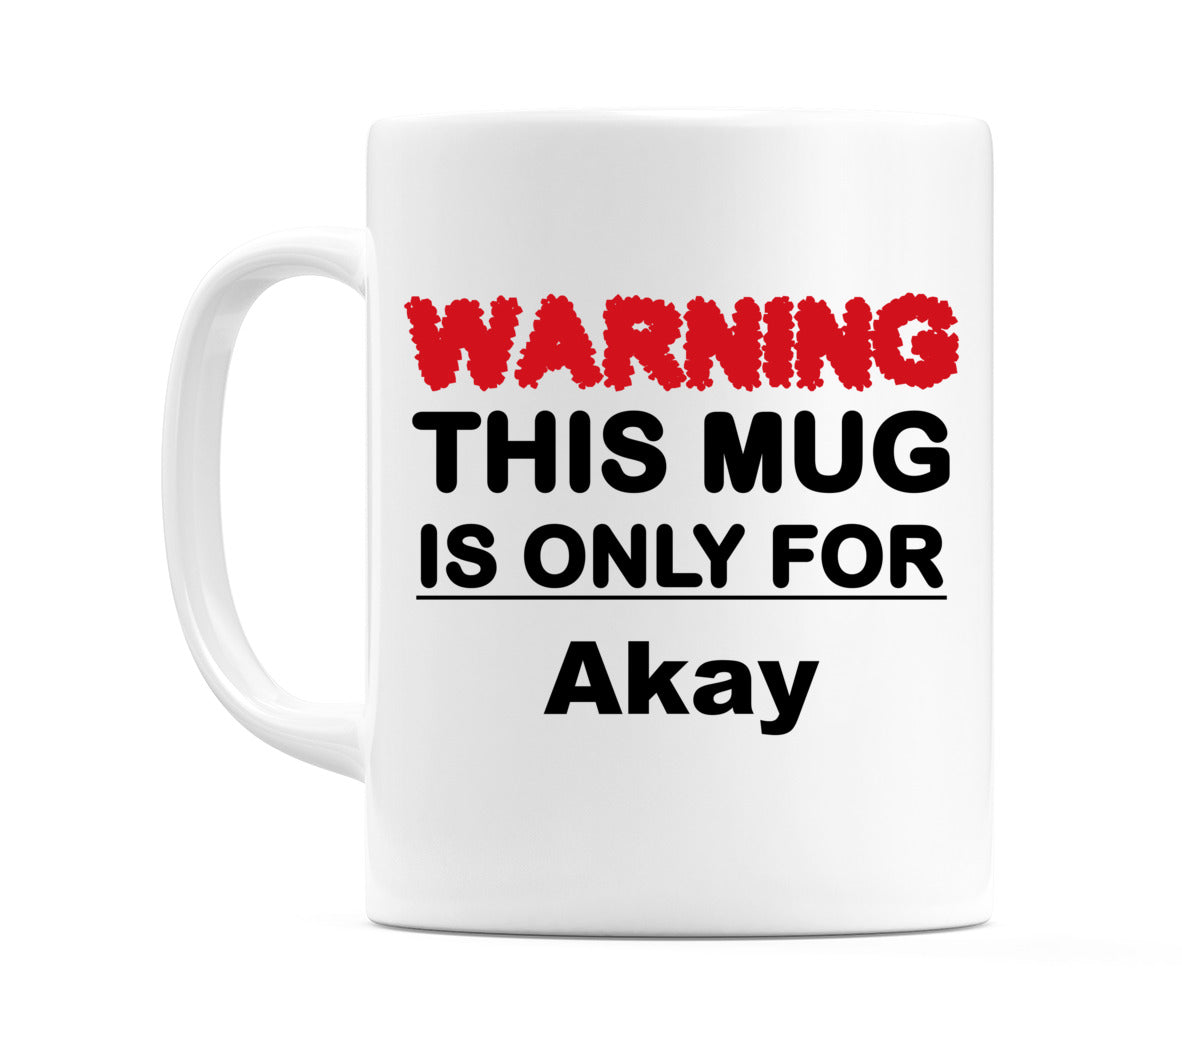 Warning This Mug is ONLY for Akay Mug